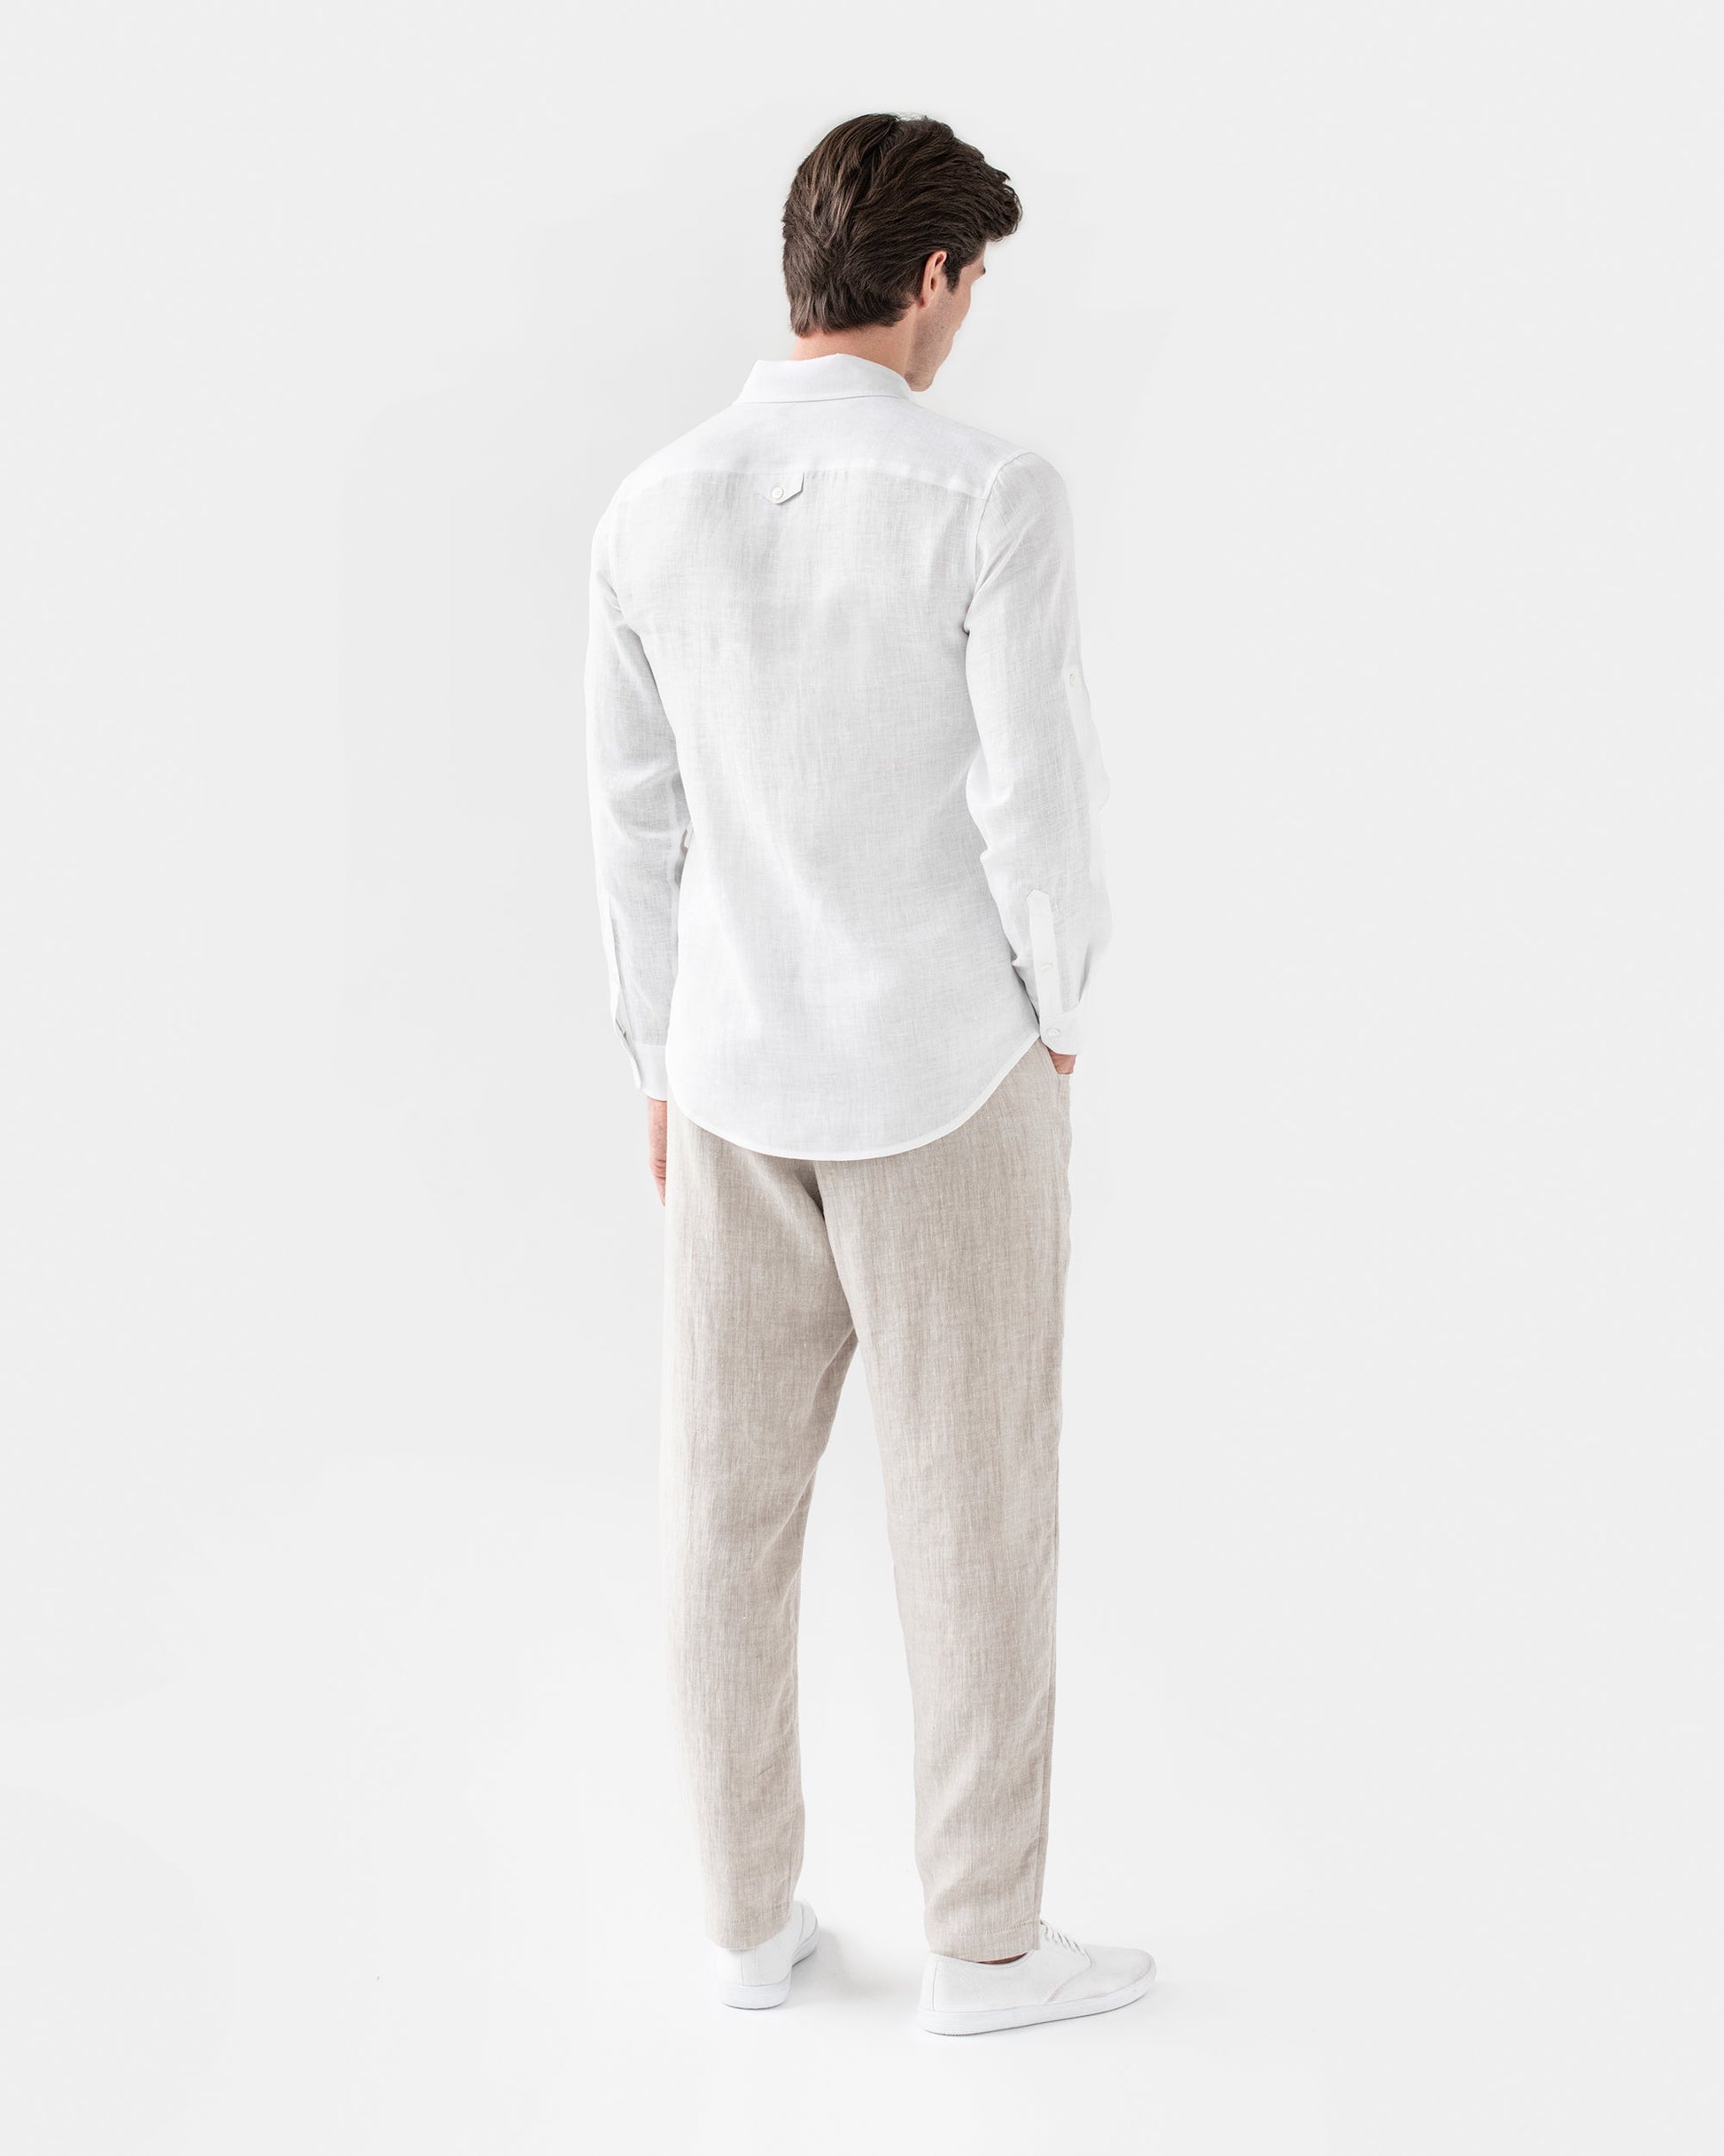 Men's linen shirt CORONADO in white - MagicLinen